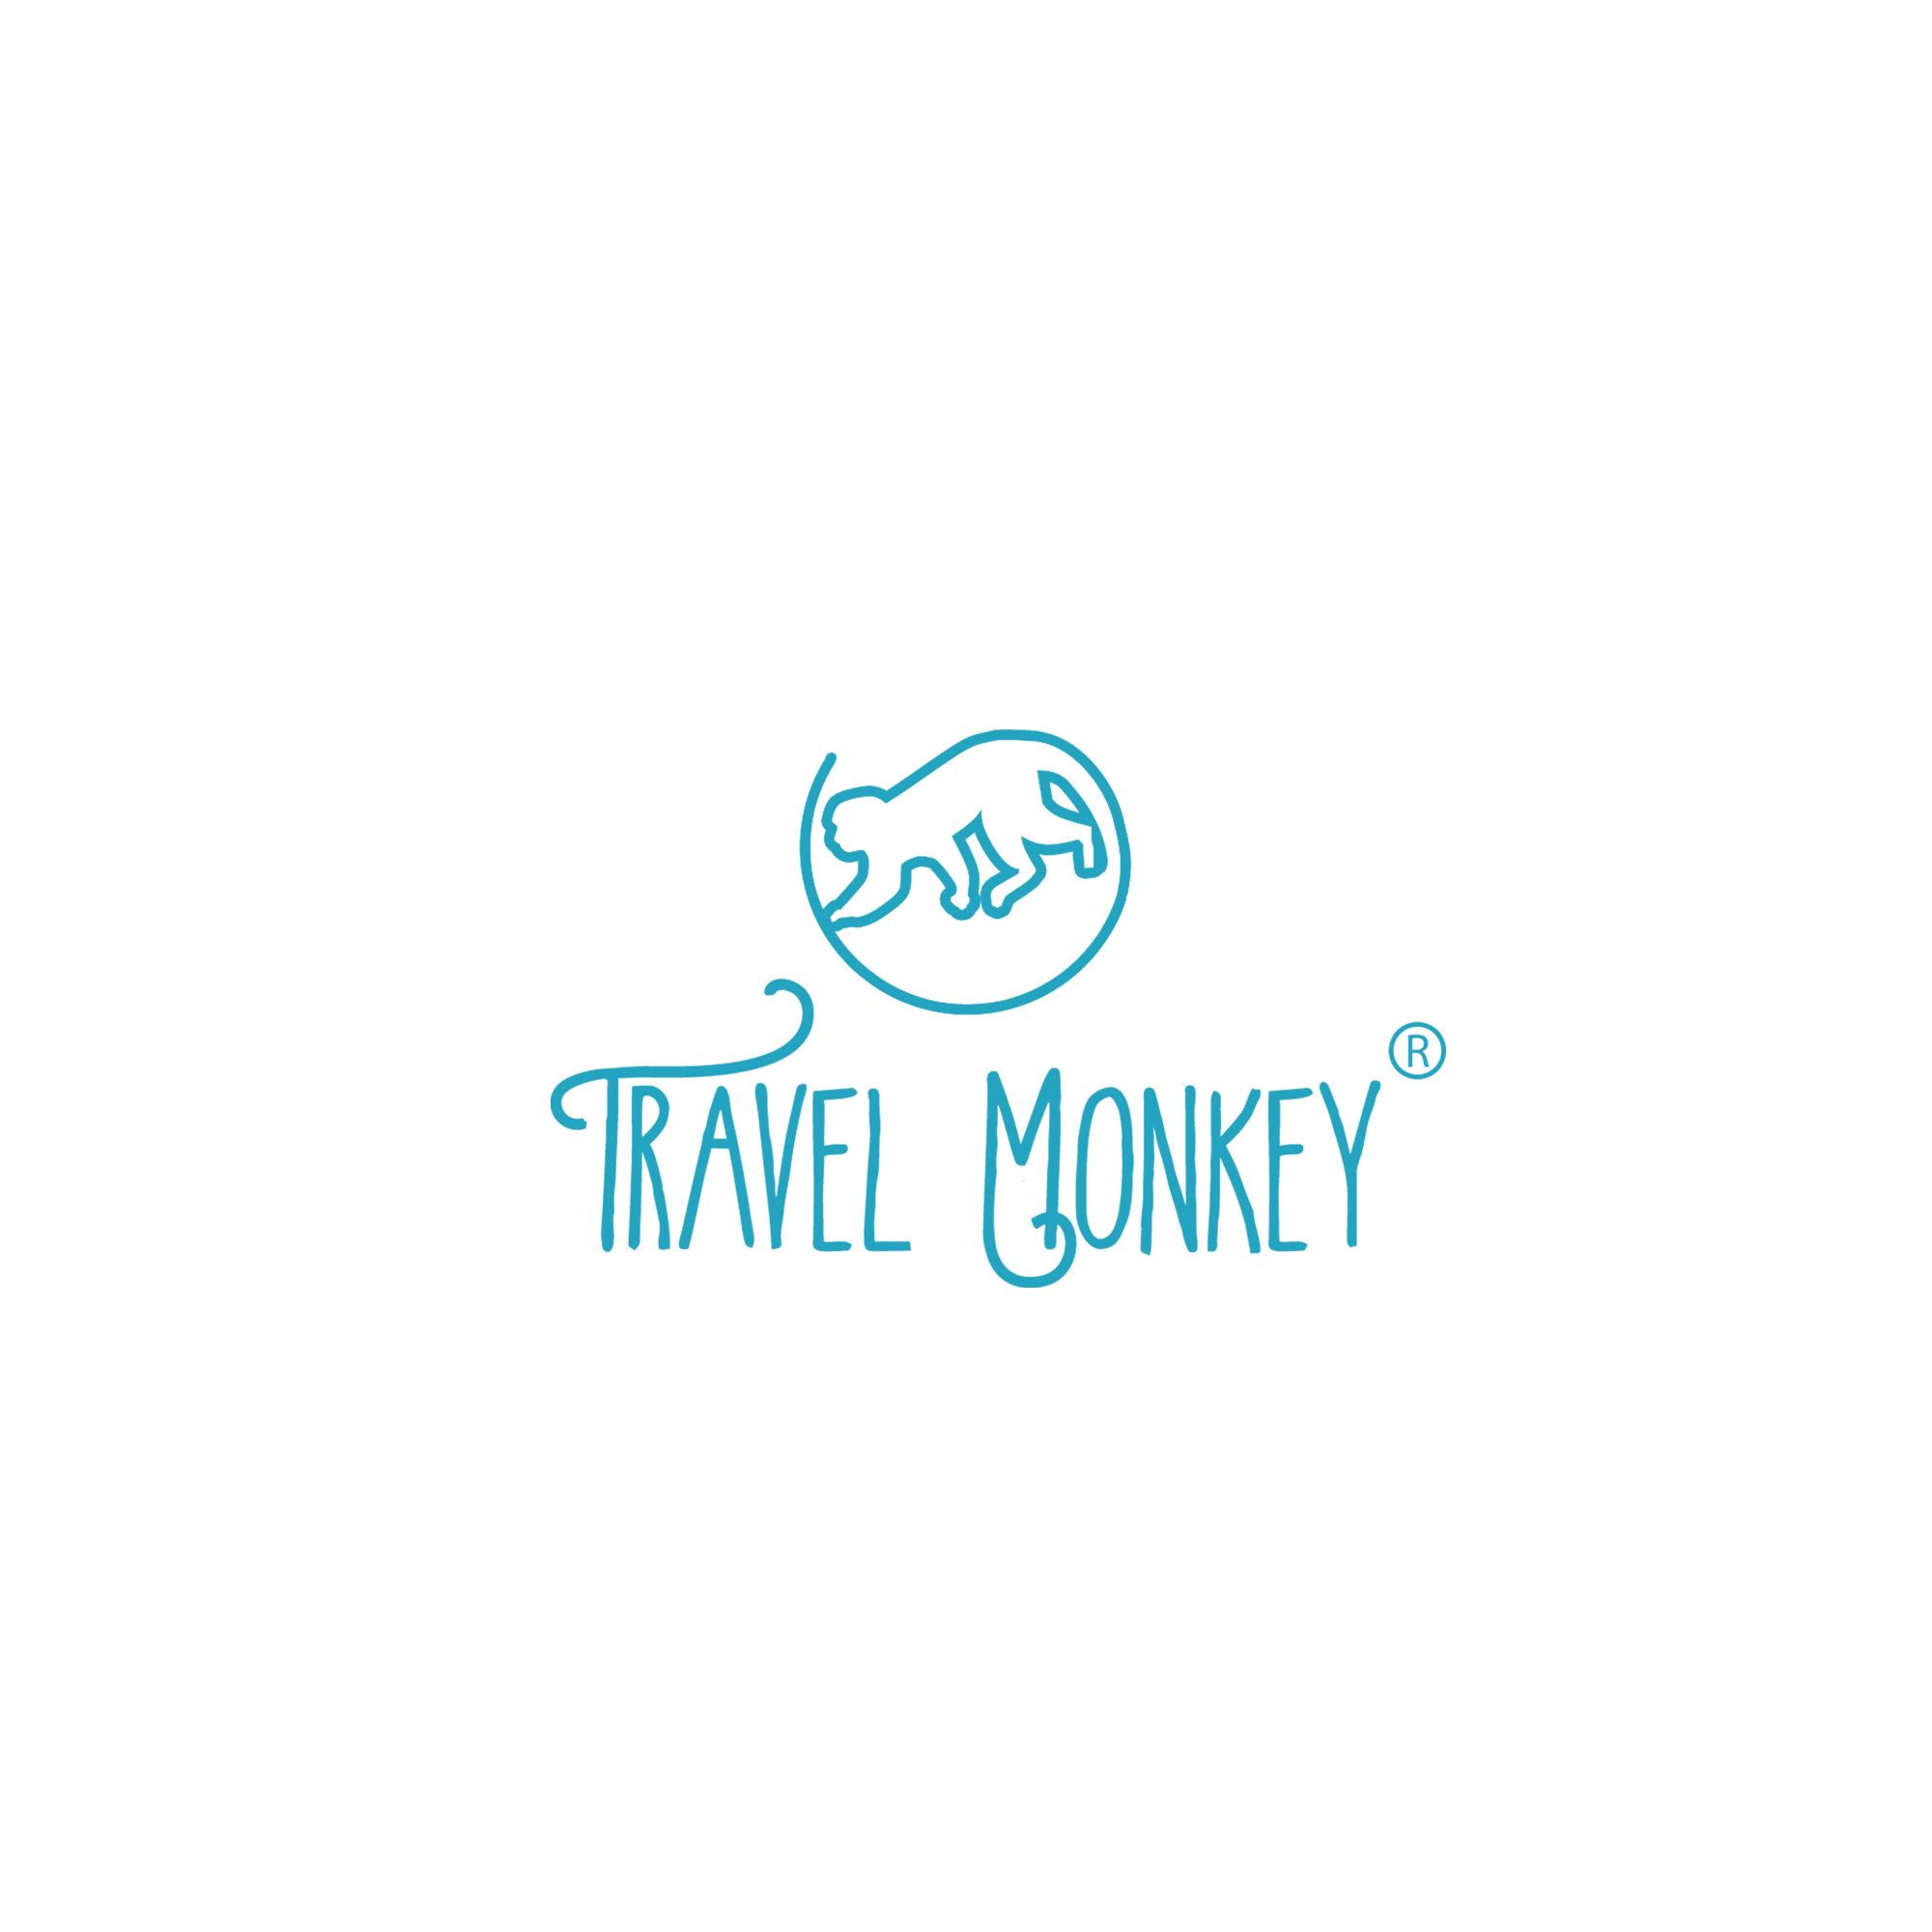 Логотип для сайта о путешествиях Travel Monkey - дизайнер weste32